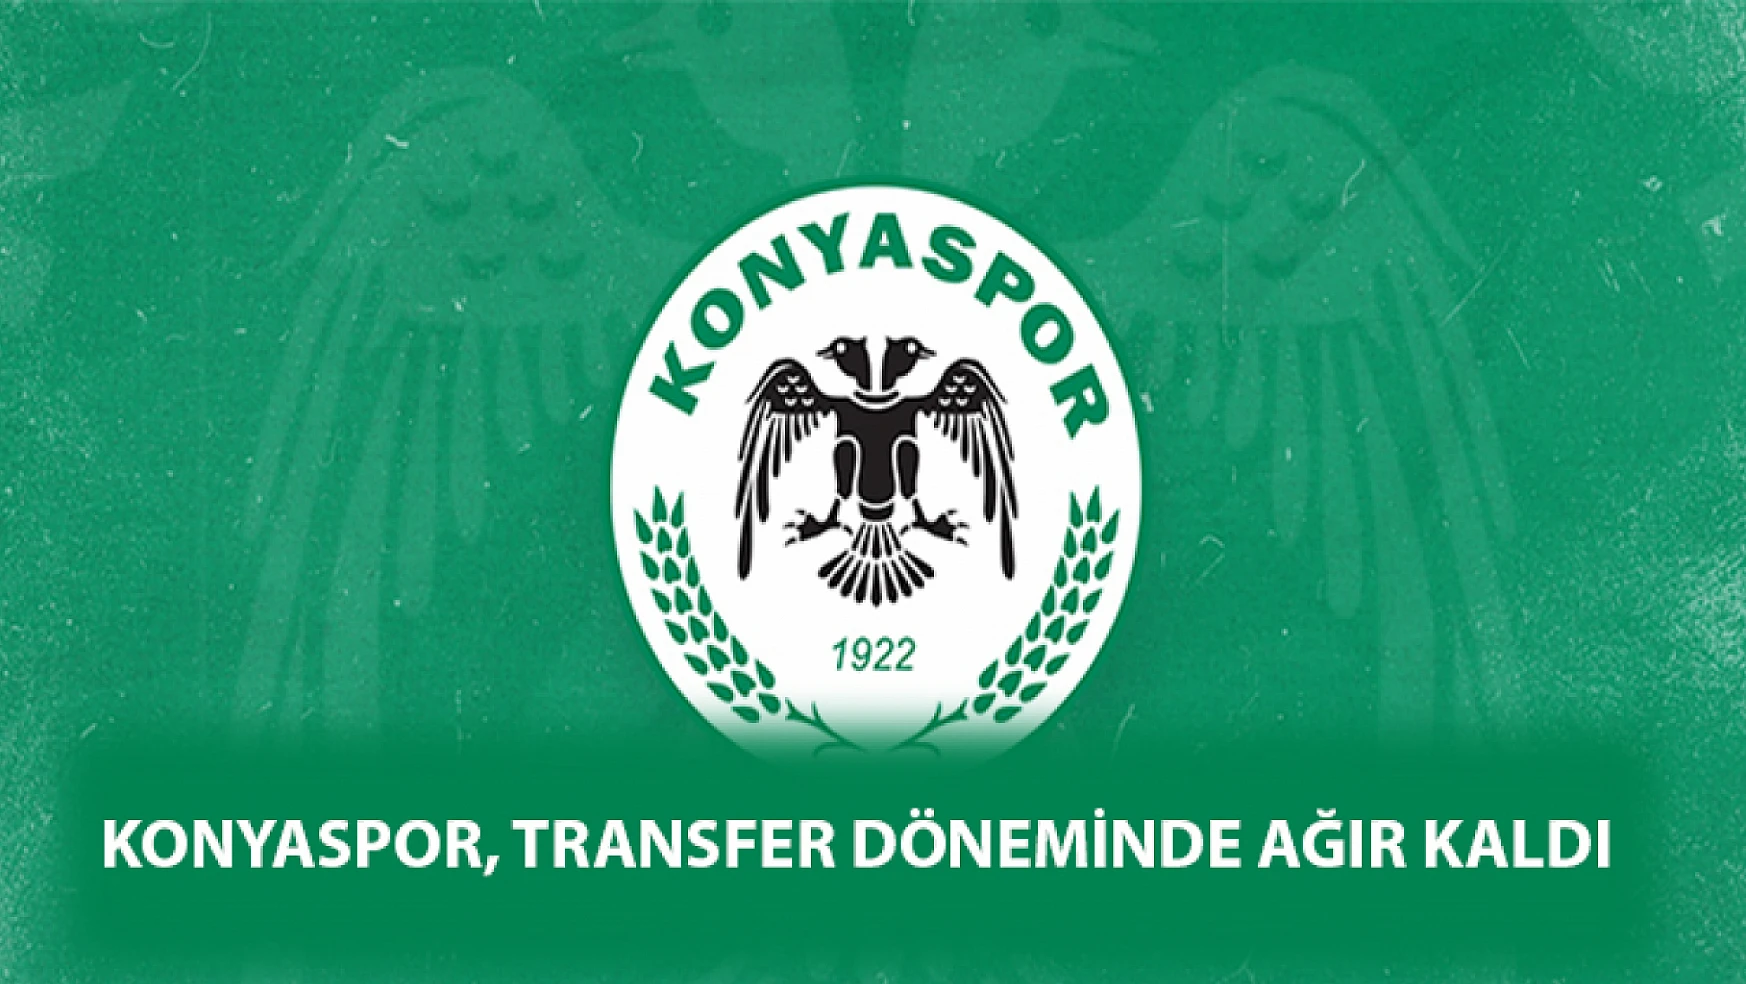 Konyaspor, transfer döneminde ağır kaldı